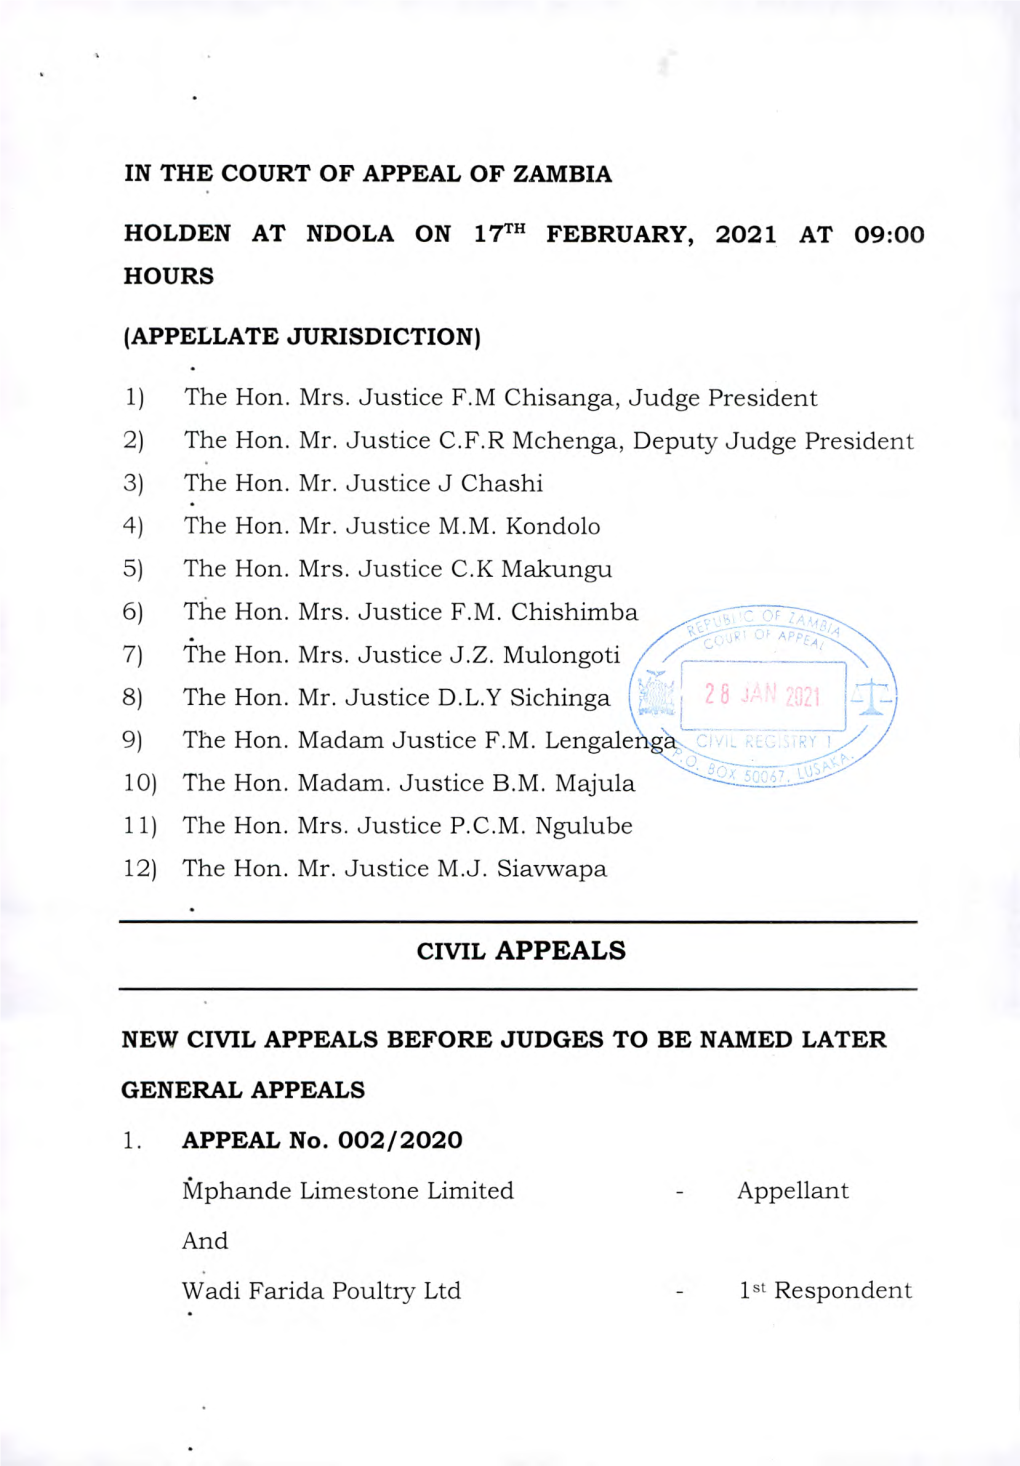 Civil Appeals Causelist